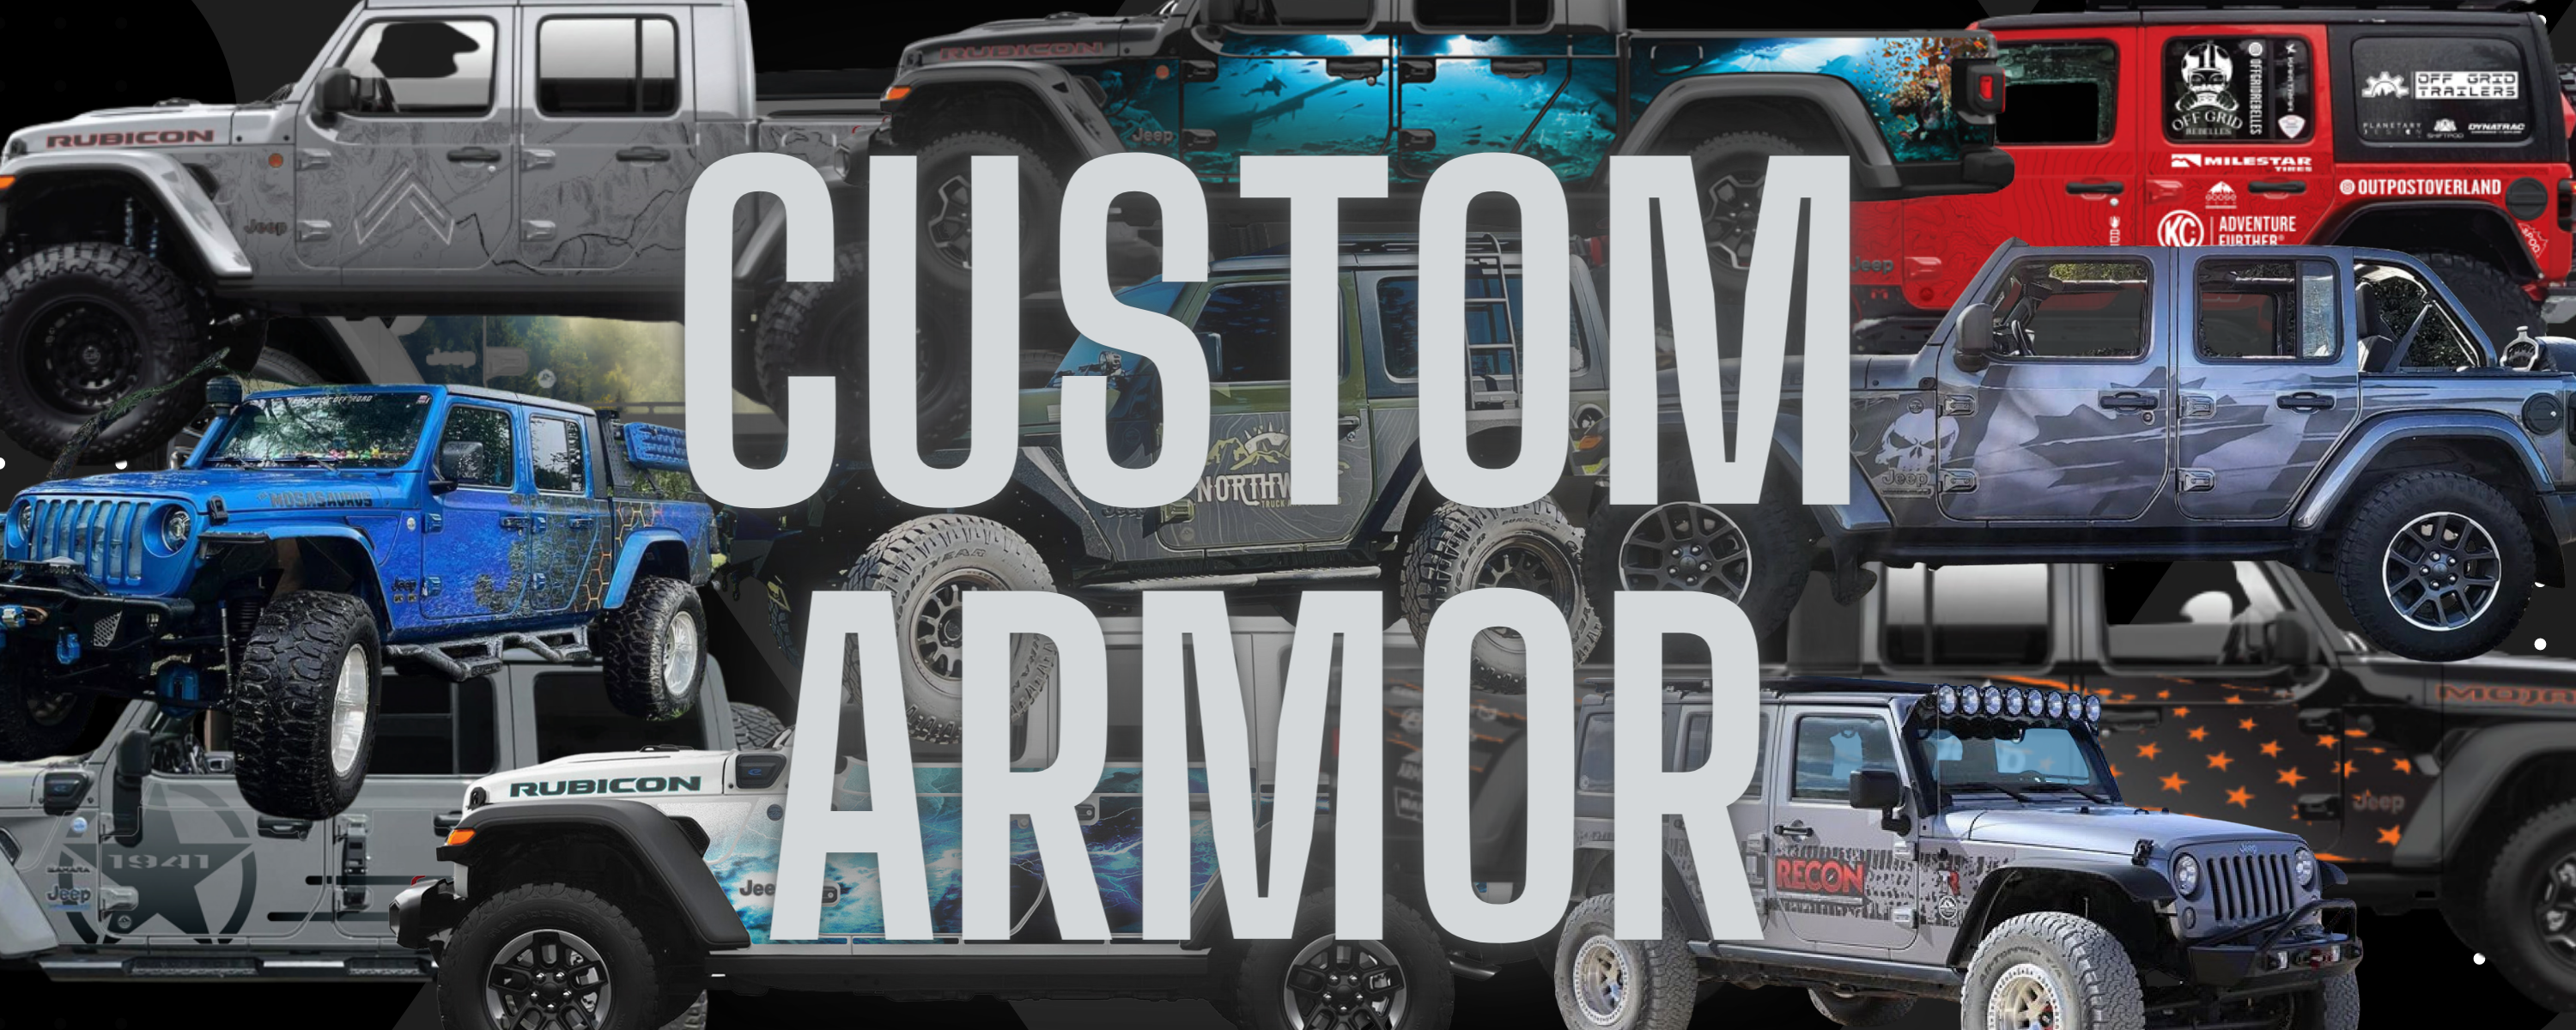 Custom Design MEK Magnet Removable Trail Armor